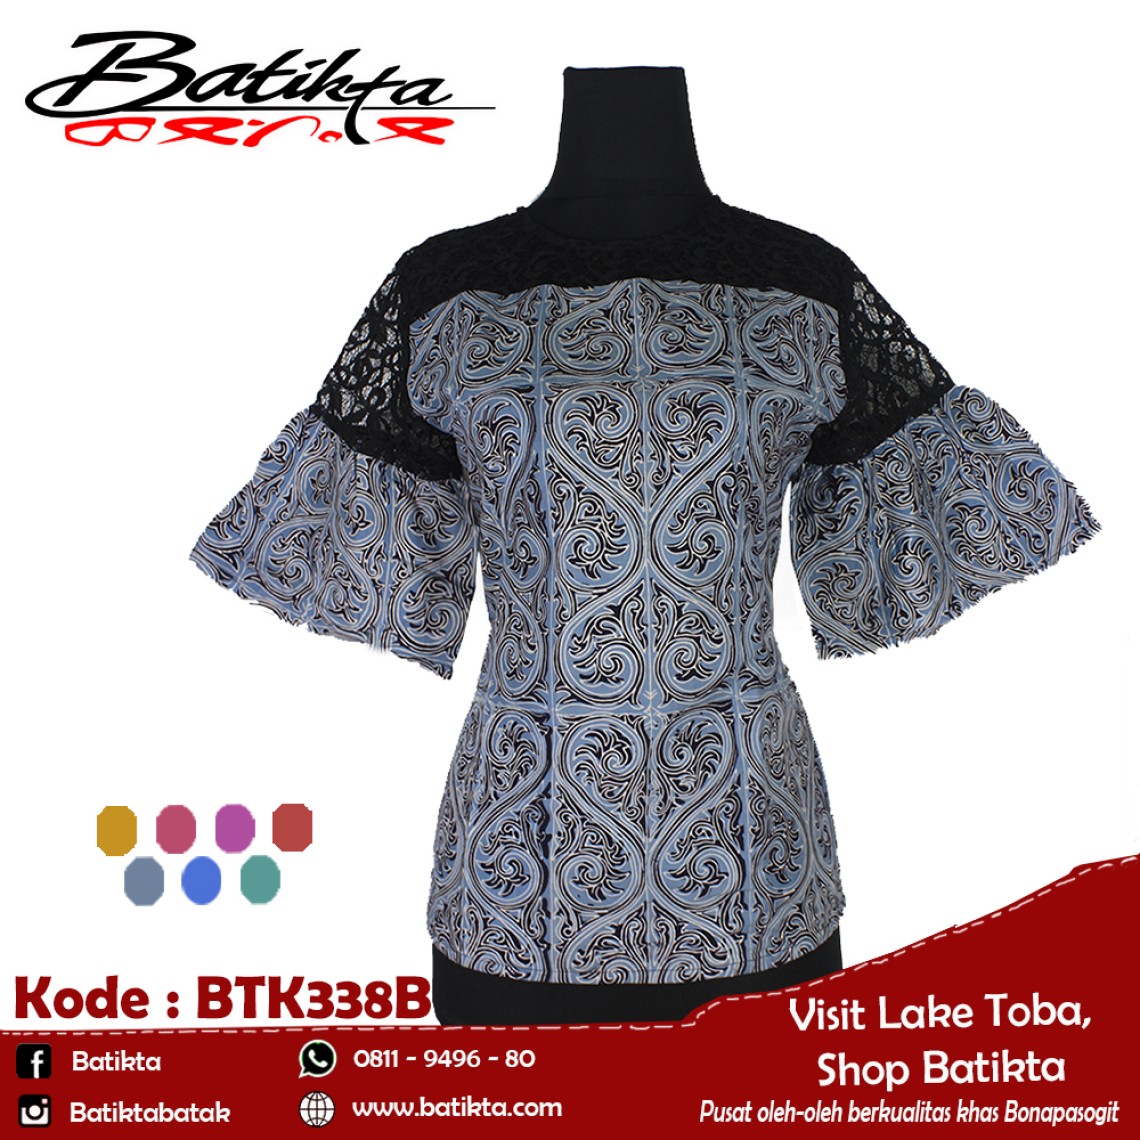 BTK338B Blus Batik Motif Gorga Warna Biru Muda Putih Hitam profile picture